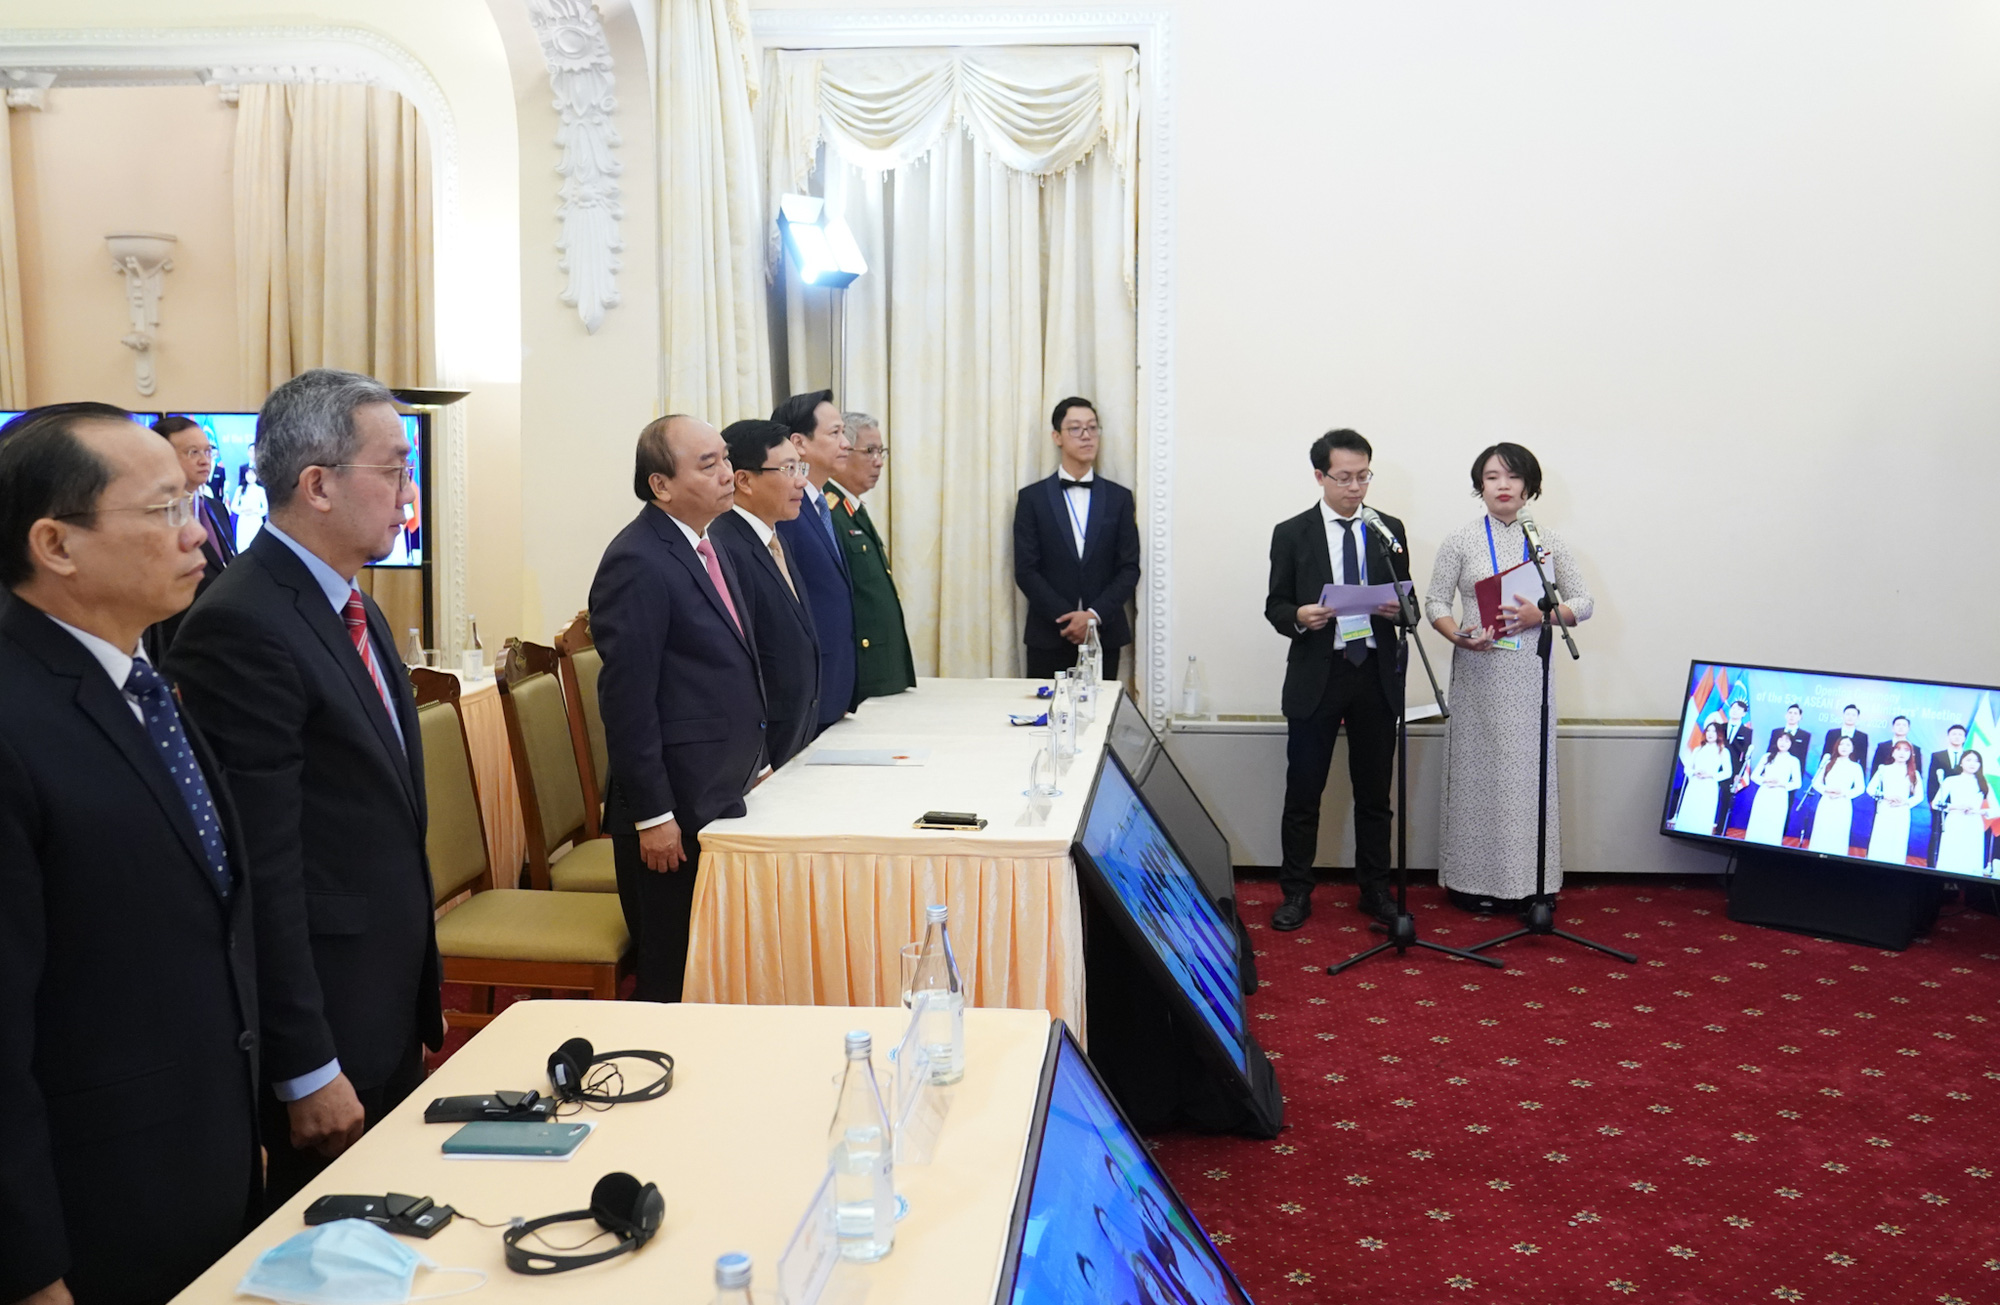 Chùm ảnh: Hội nghị Bộ trưởng Ngoại giao ASEAN chính thức khai mạc - Ảnh 2.